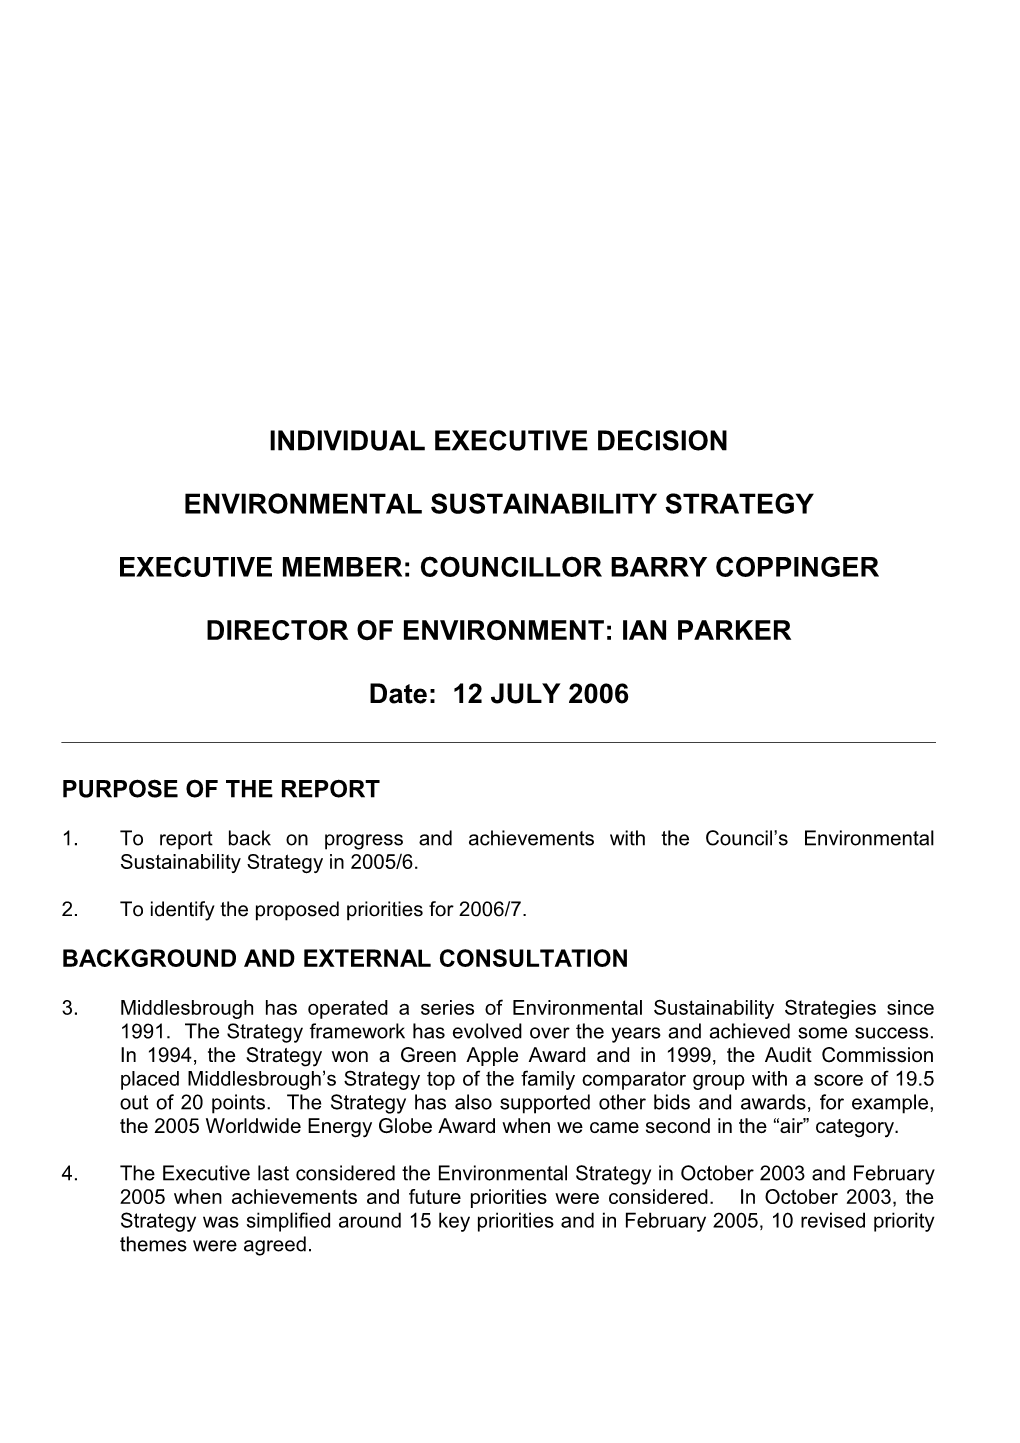 Executive Member: Councillor Barry Coppinger